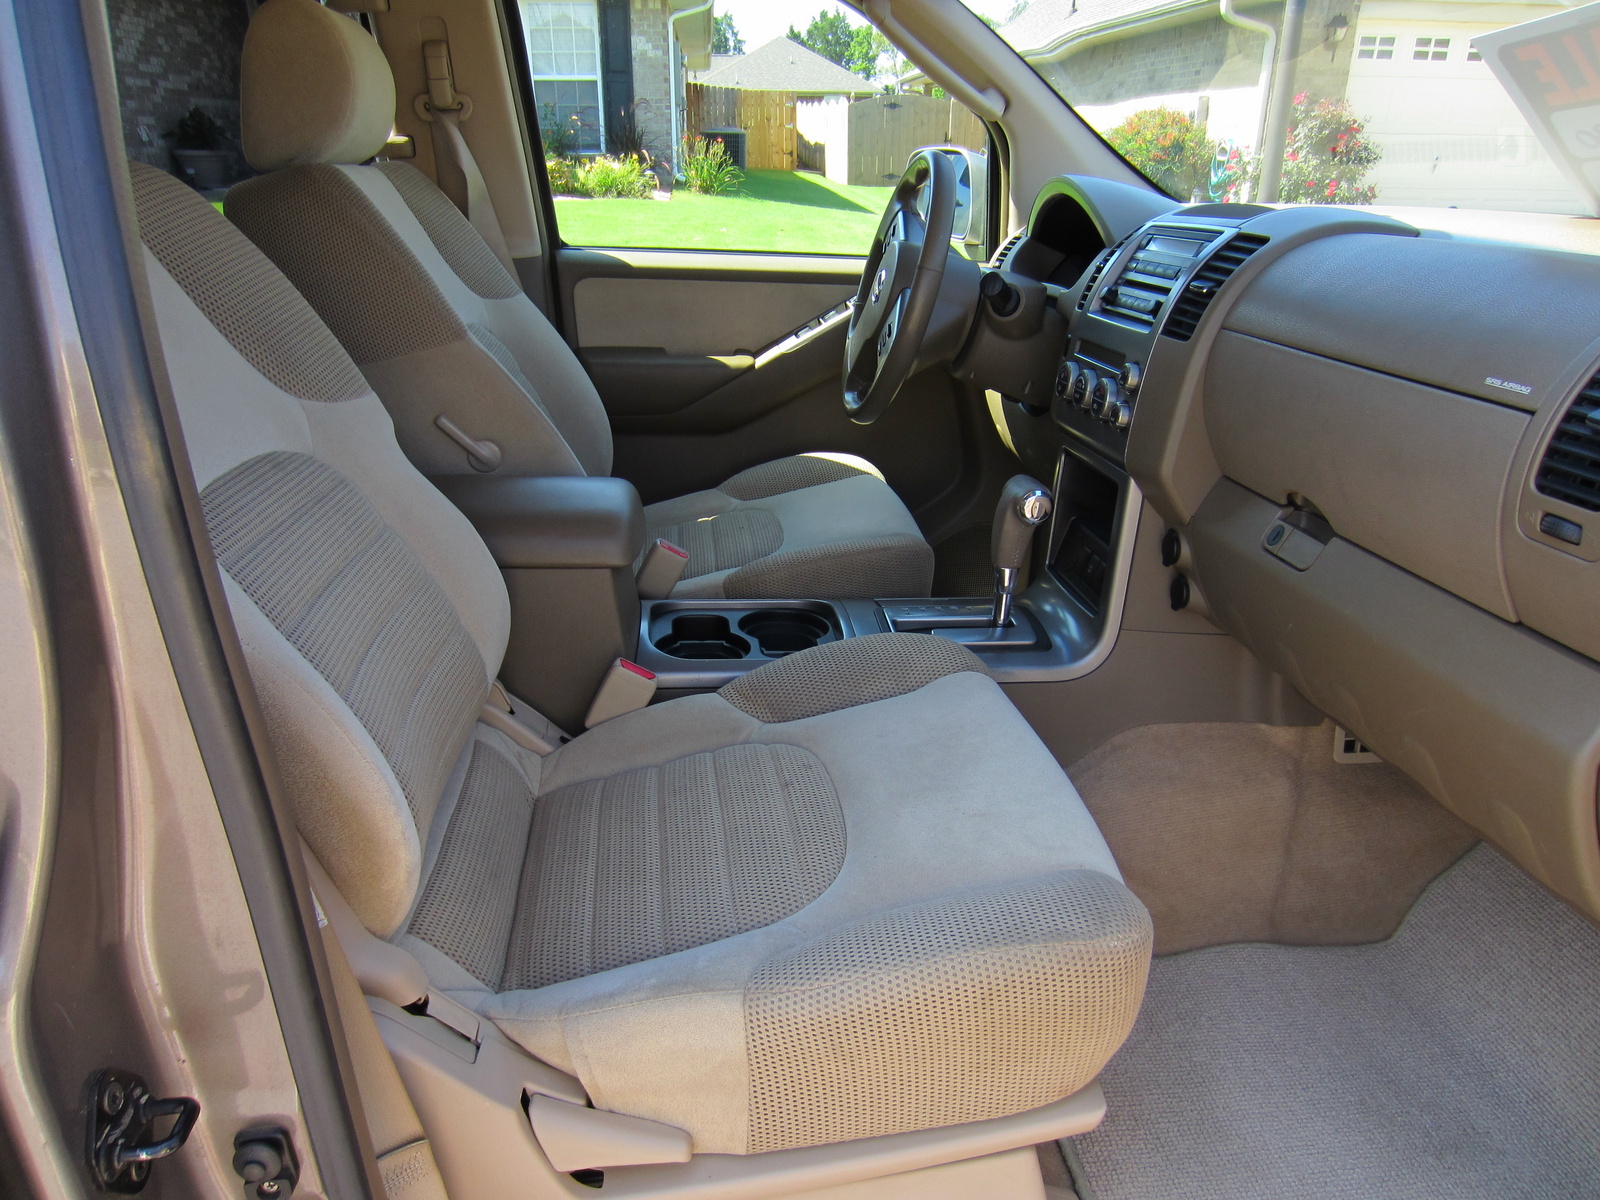 2005 Nissan pathfinder se interior